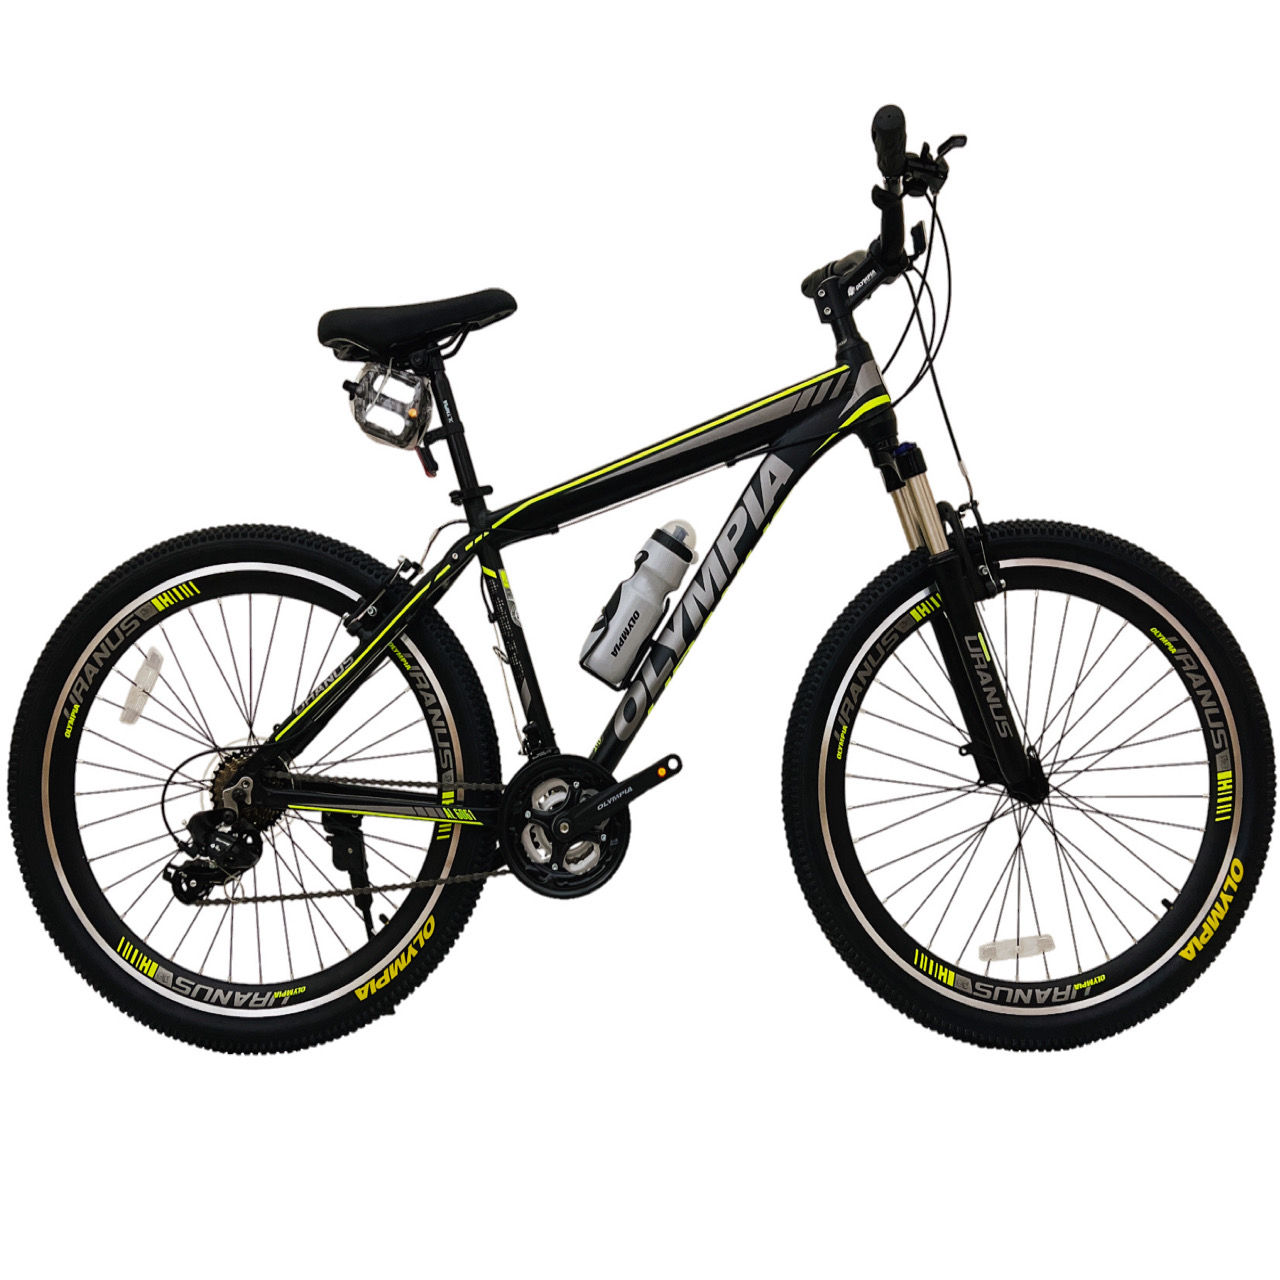 نکته خرید - قیمت روز دوچرخه کوهستان المپیا مدل TOPOLEV کد 1 سایز طوقه 27.5 خرید